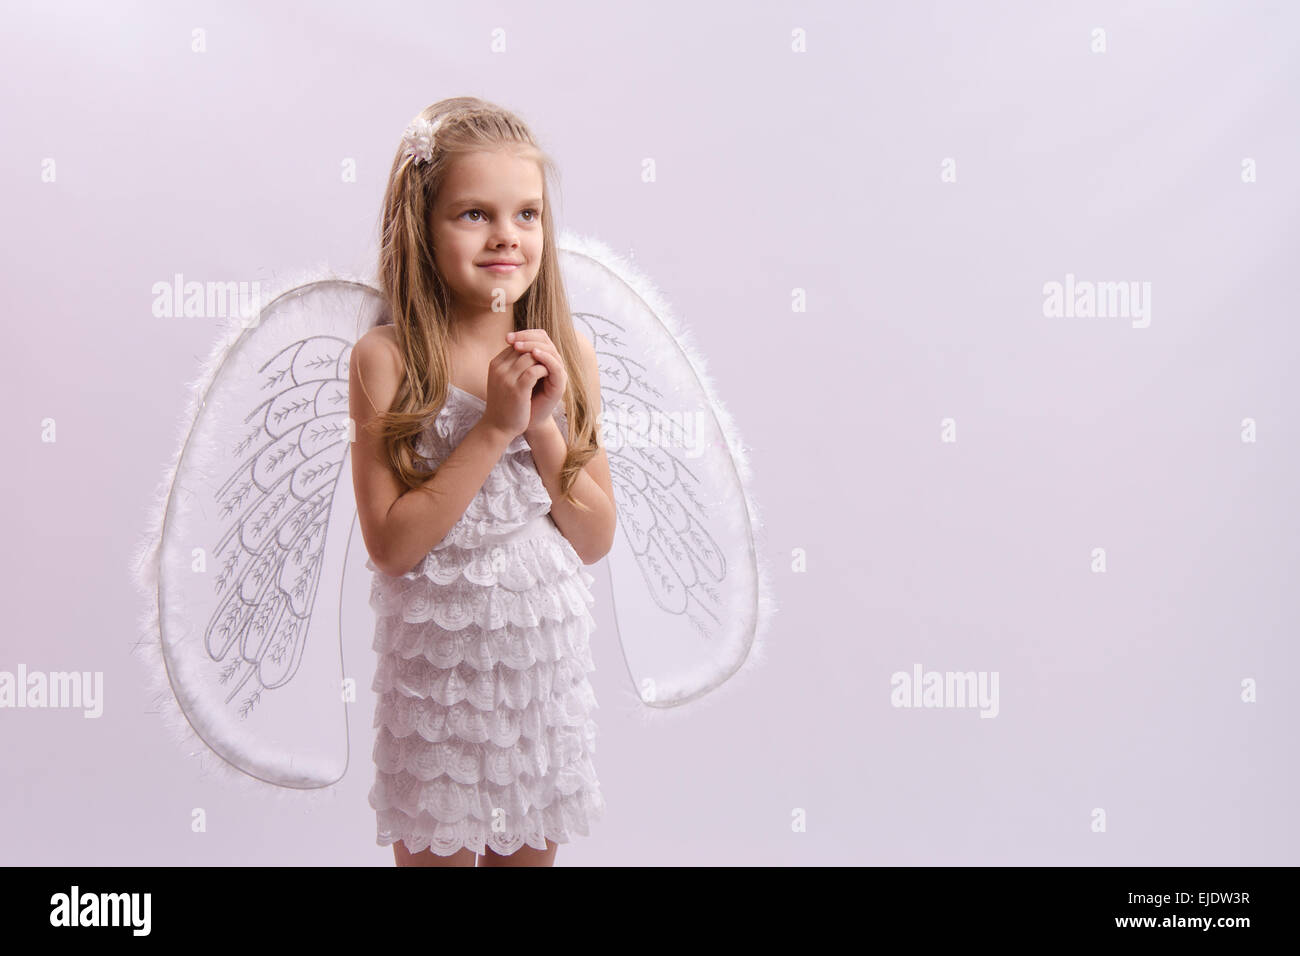 6 anno vecchia ragazza in un bright angel costume con ali su sfondo bianco Foto Stock